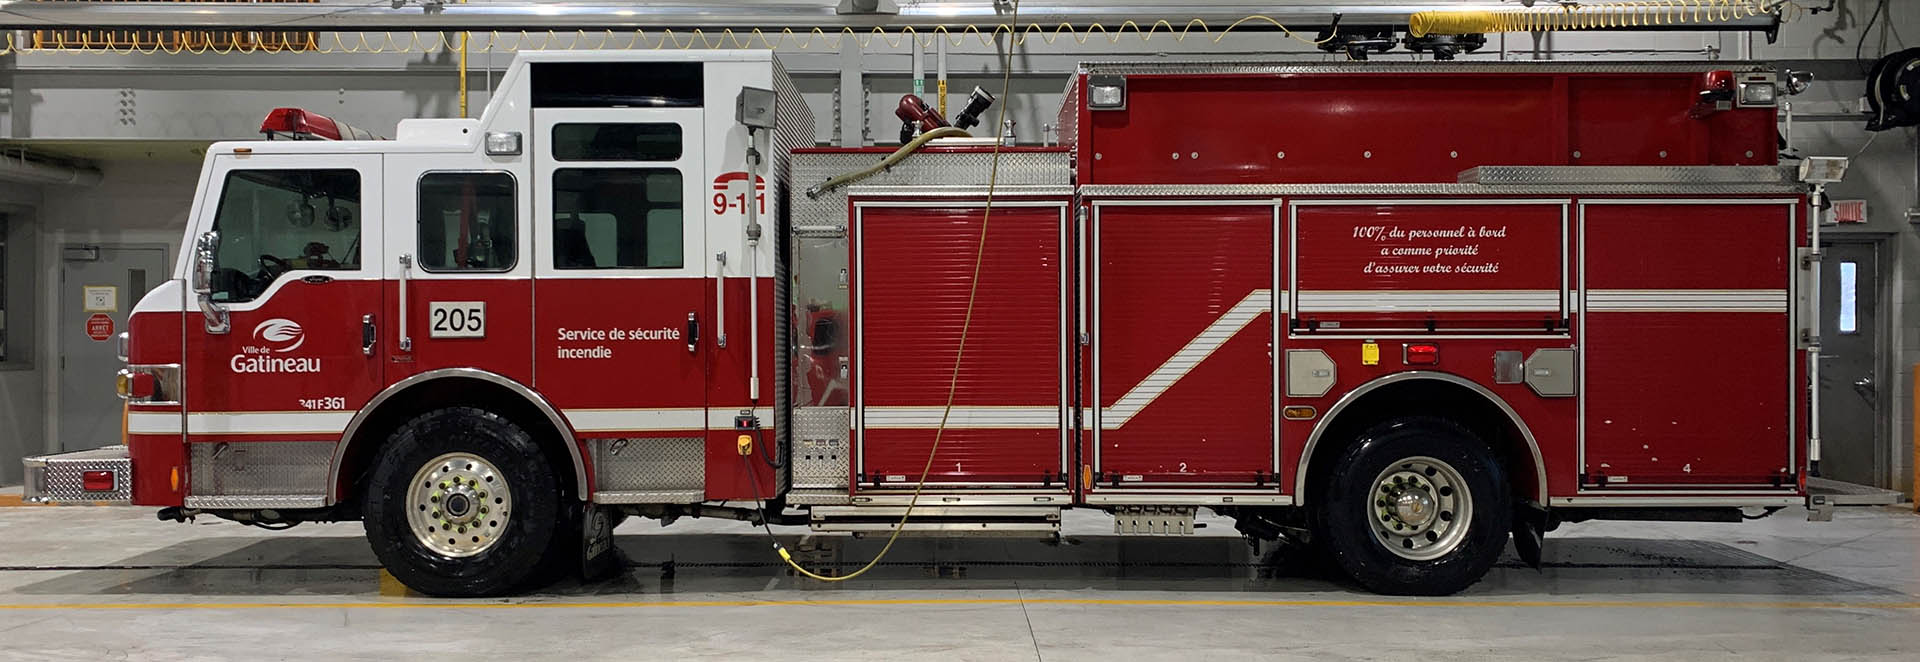 Echelle de pompier pour les services d'incendie ou de secours